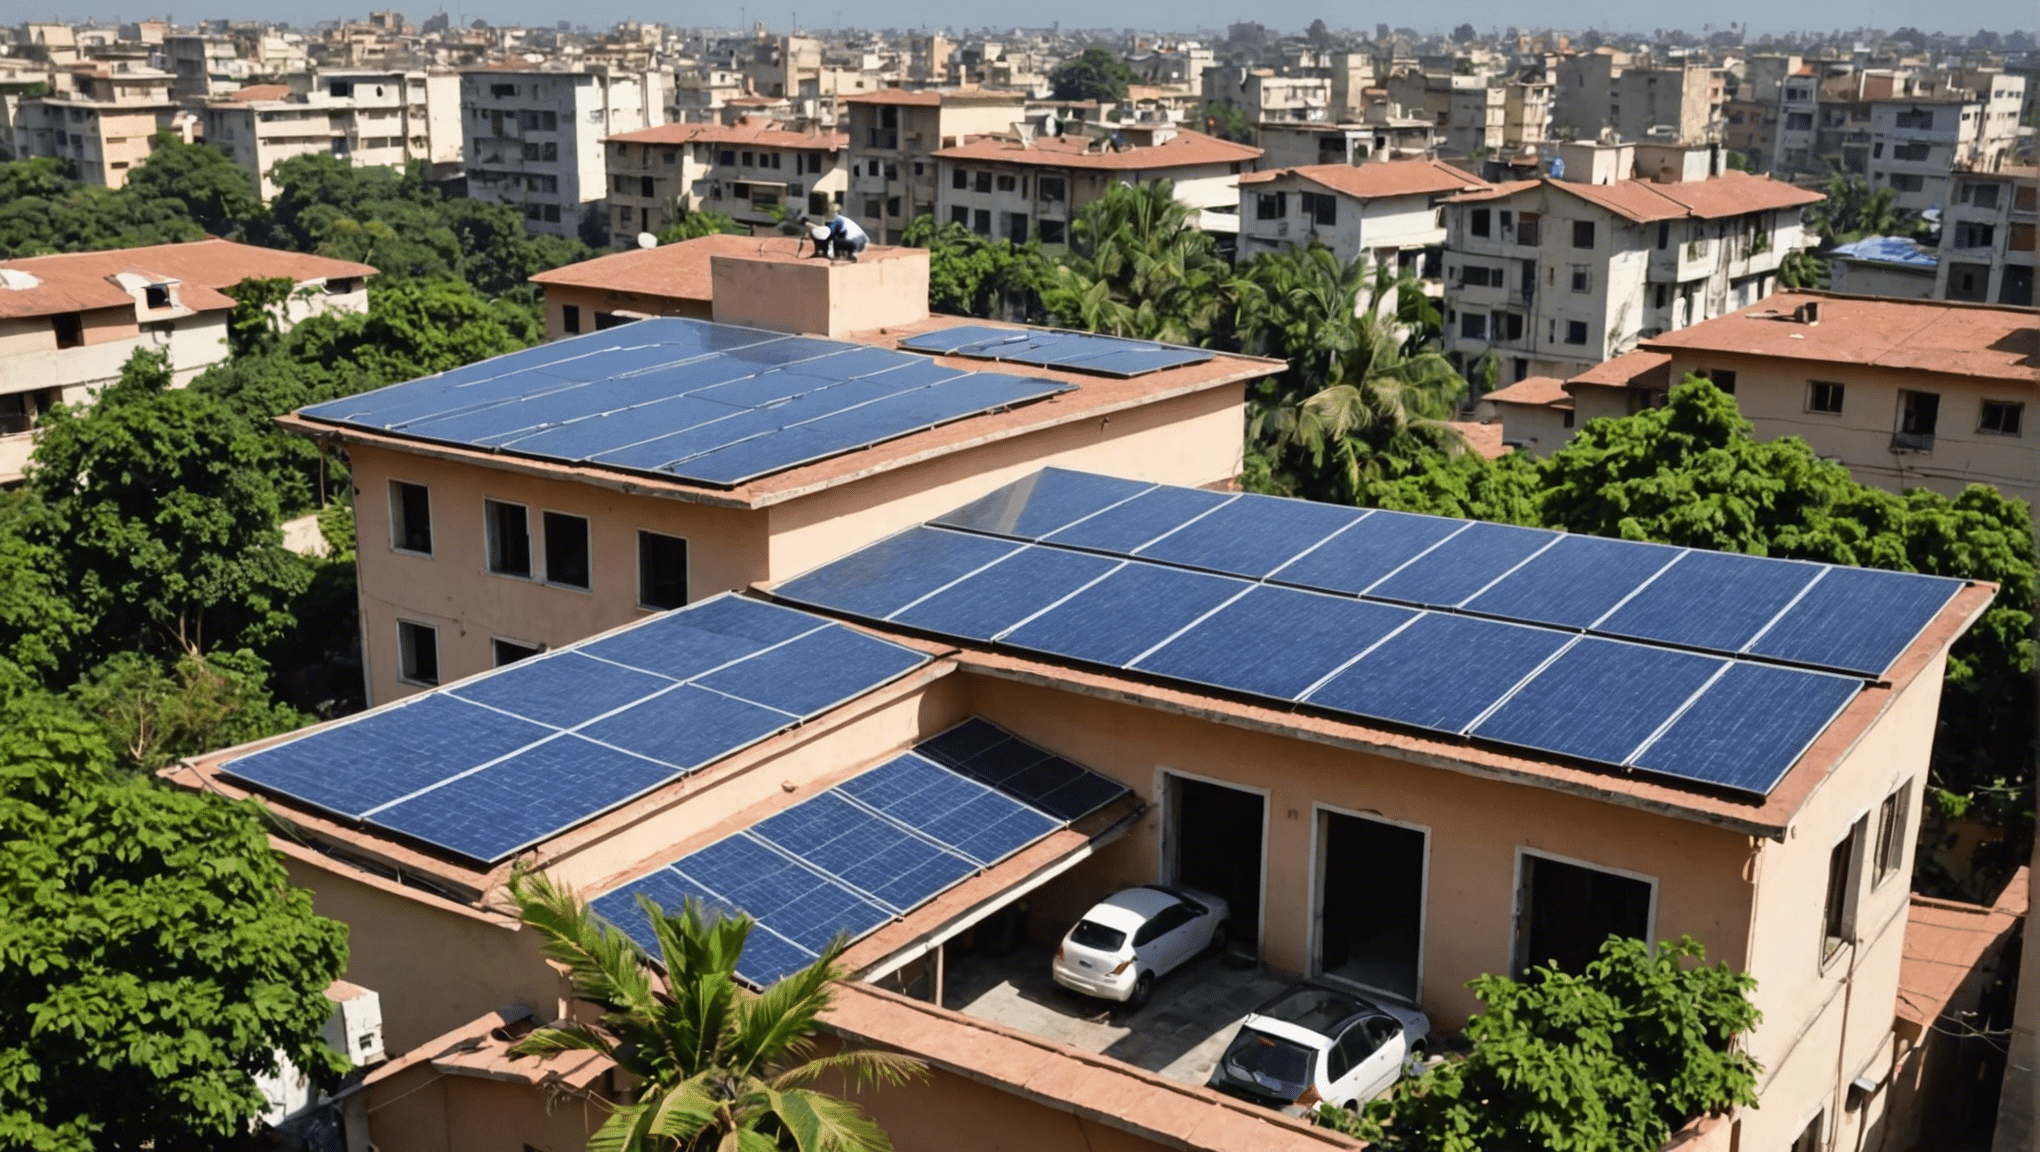 l'inde projette de déployer 10 millions de toits solaires sur les résidences des citoyens, afin de promouvoir l'énergie renouvelable et de réduire la dépendance aux combustibles fossiles.